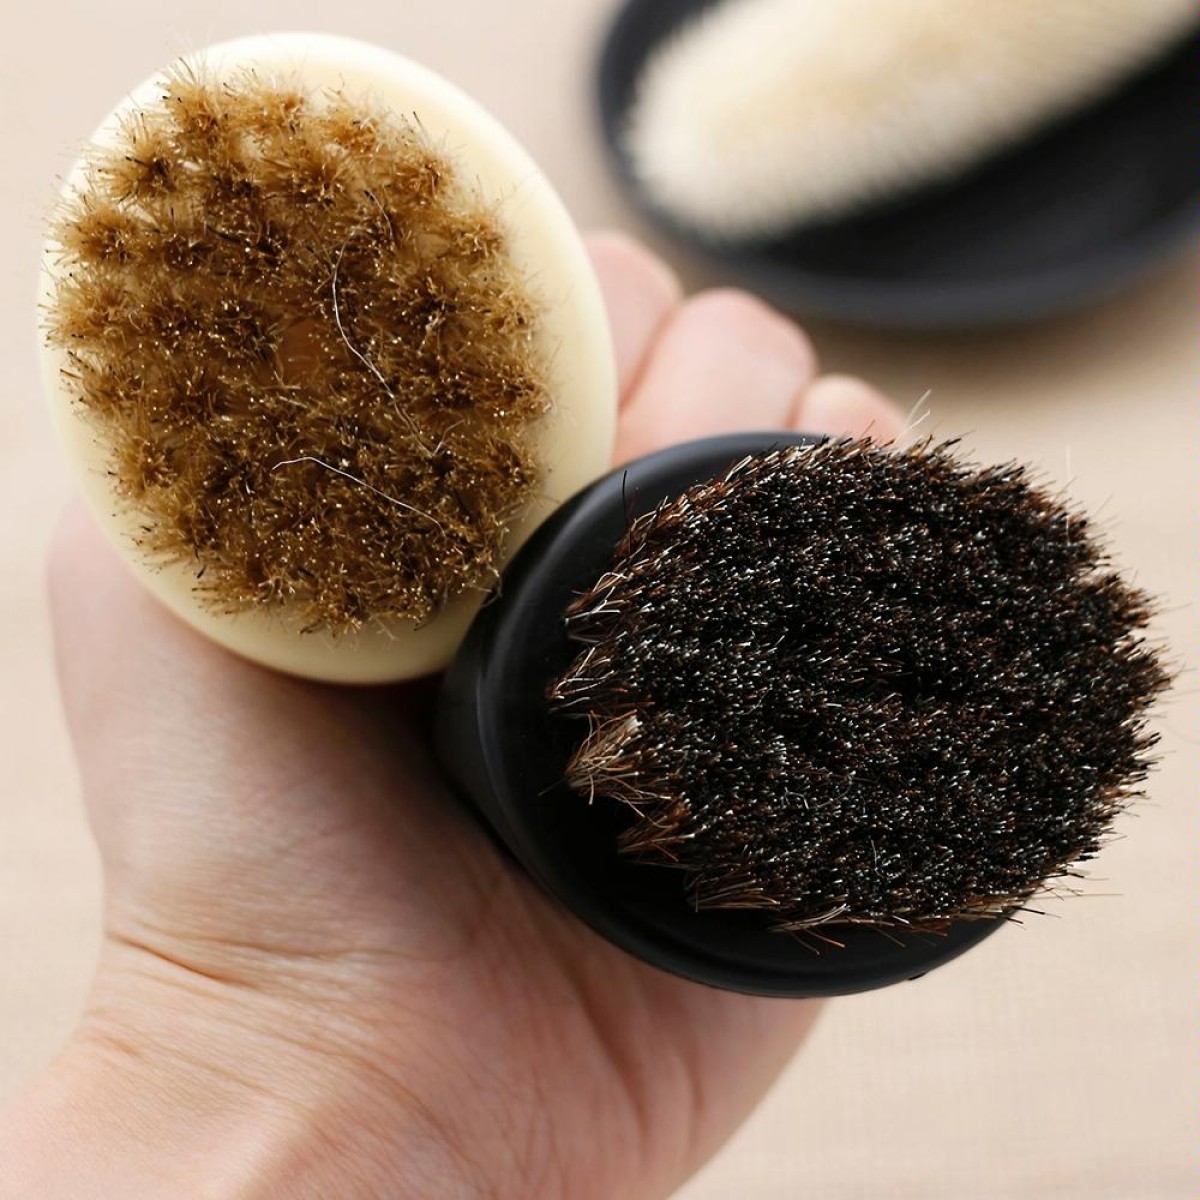 Men Ring Design Portable Boar Brush Black ABS Haircut Cleaning Shaving Brush(Black)